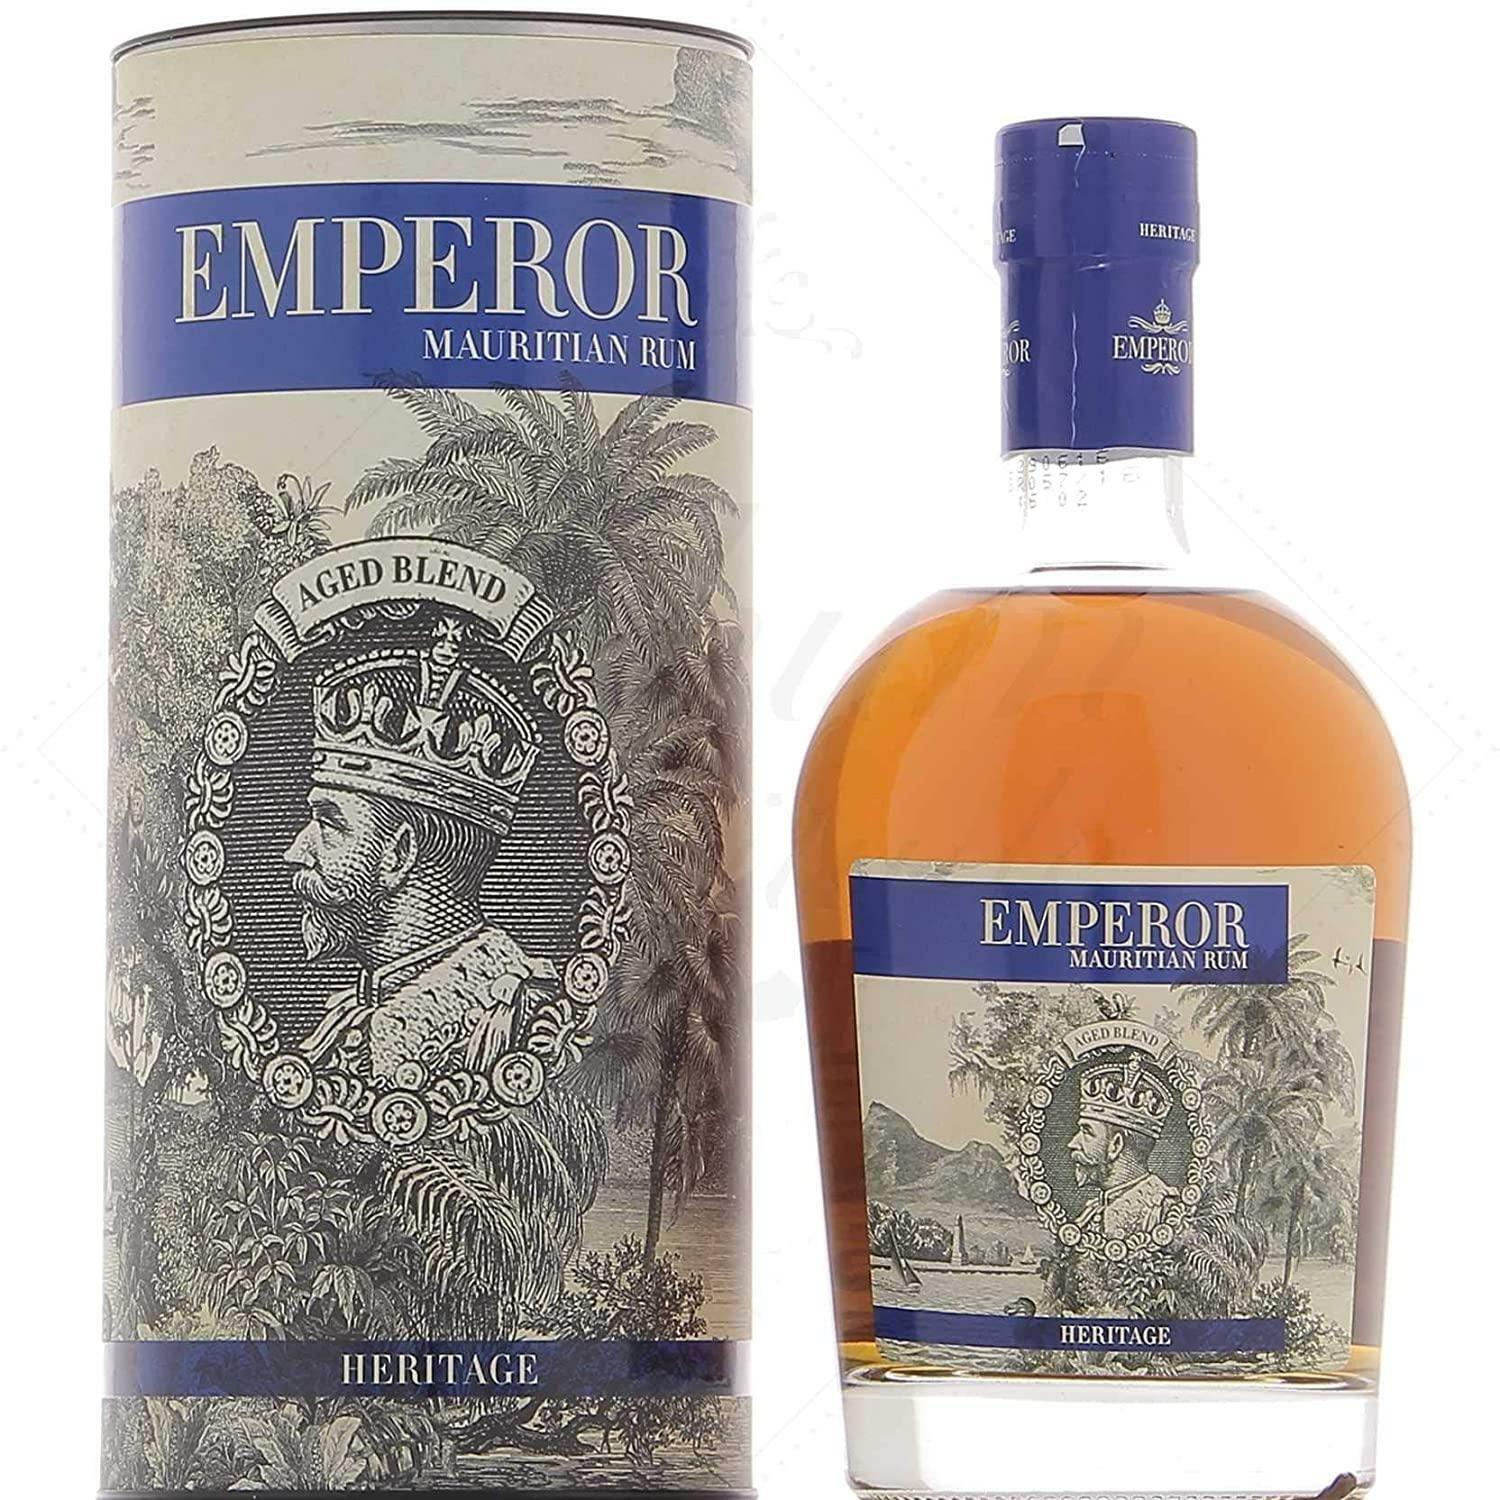 emperor emperor mauritian rum heritage 70 cl in astuccio